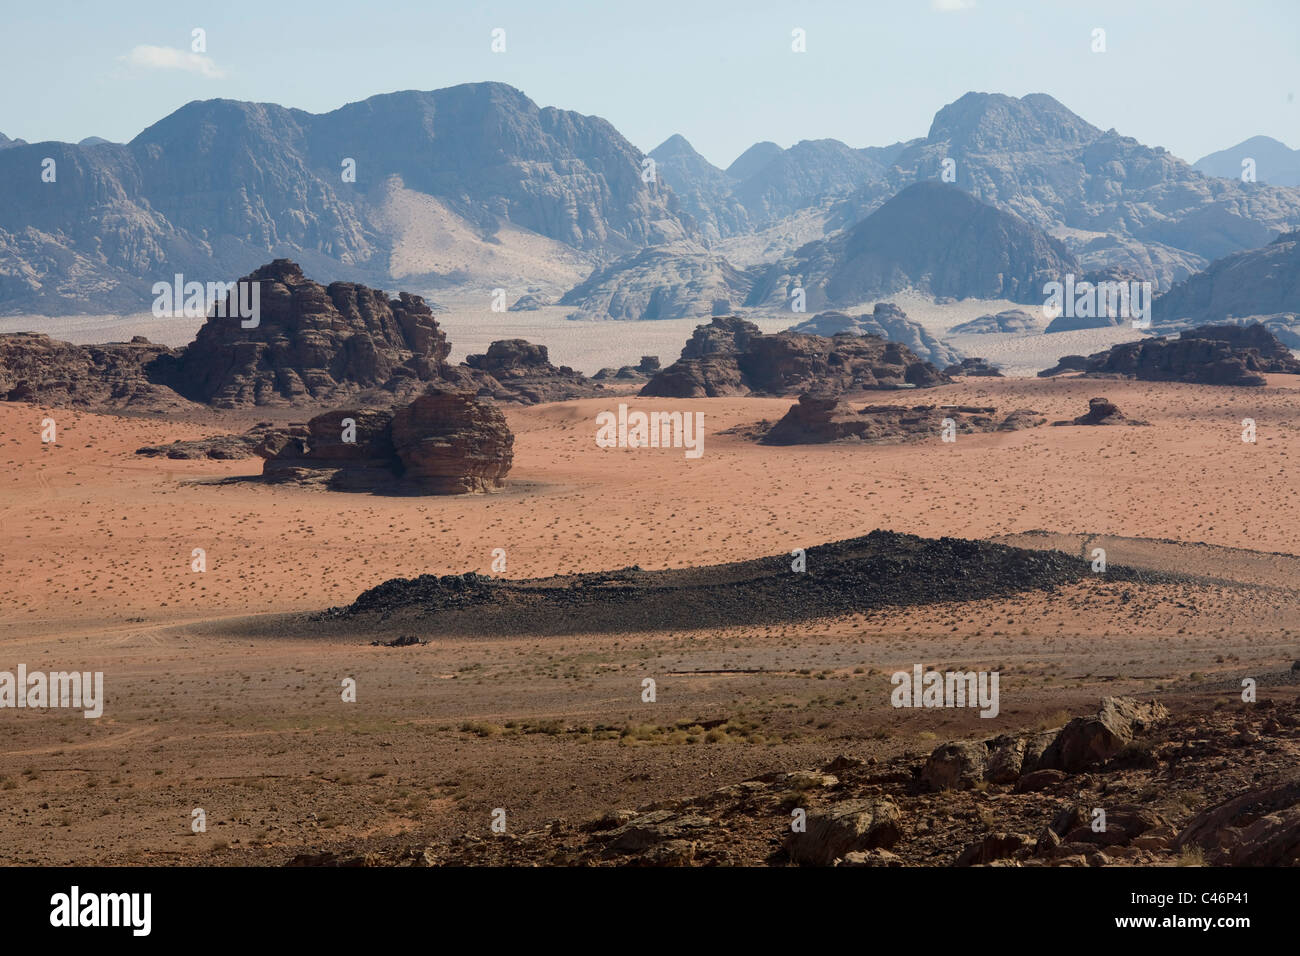 Fotografia di massicce scogliere del deserto giordano Foto Stock